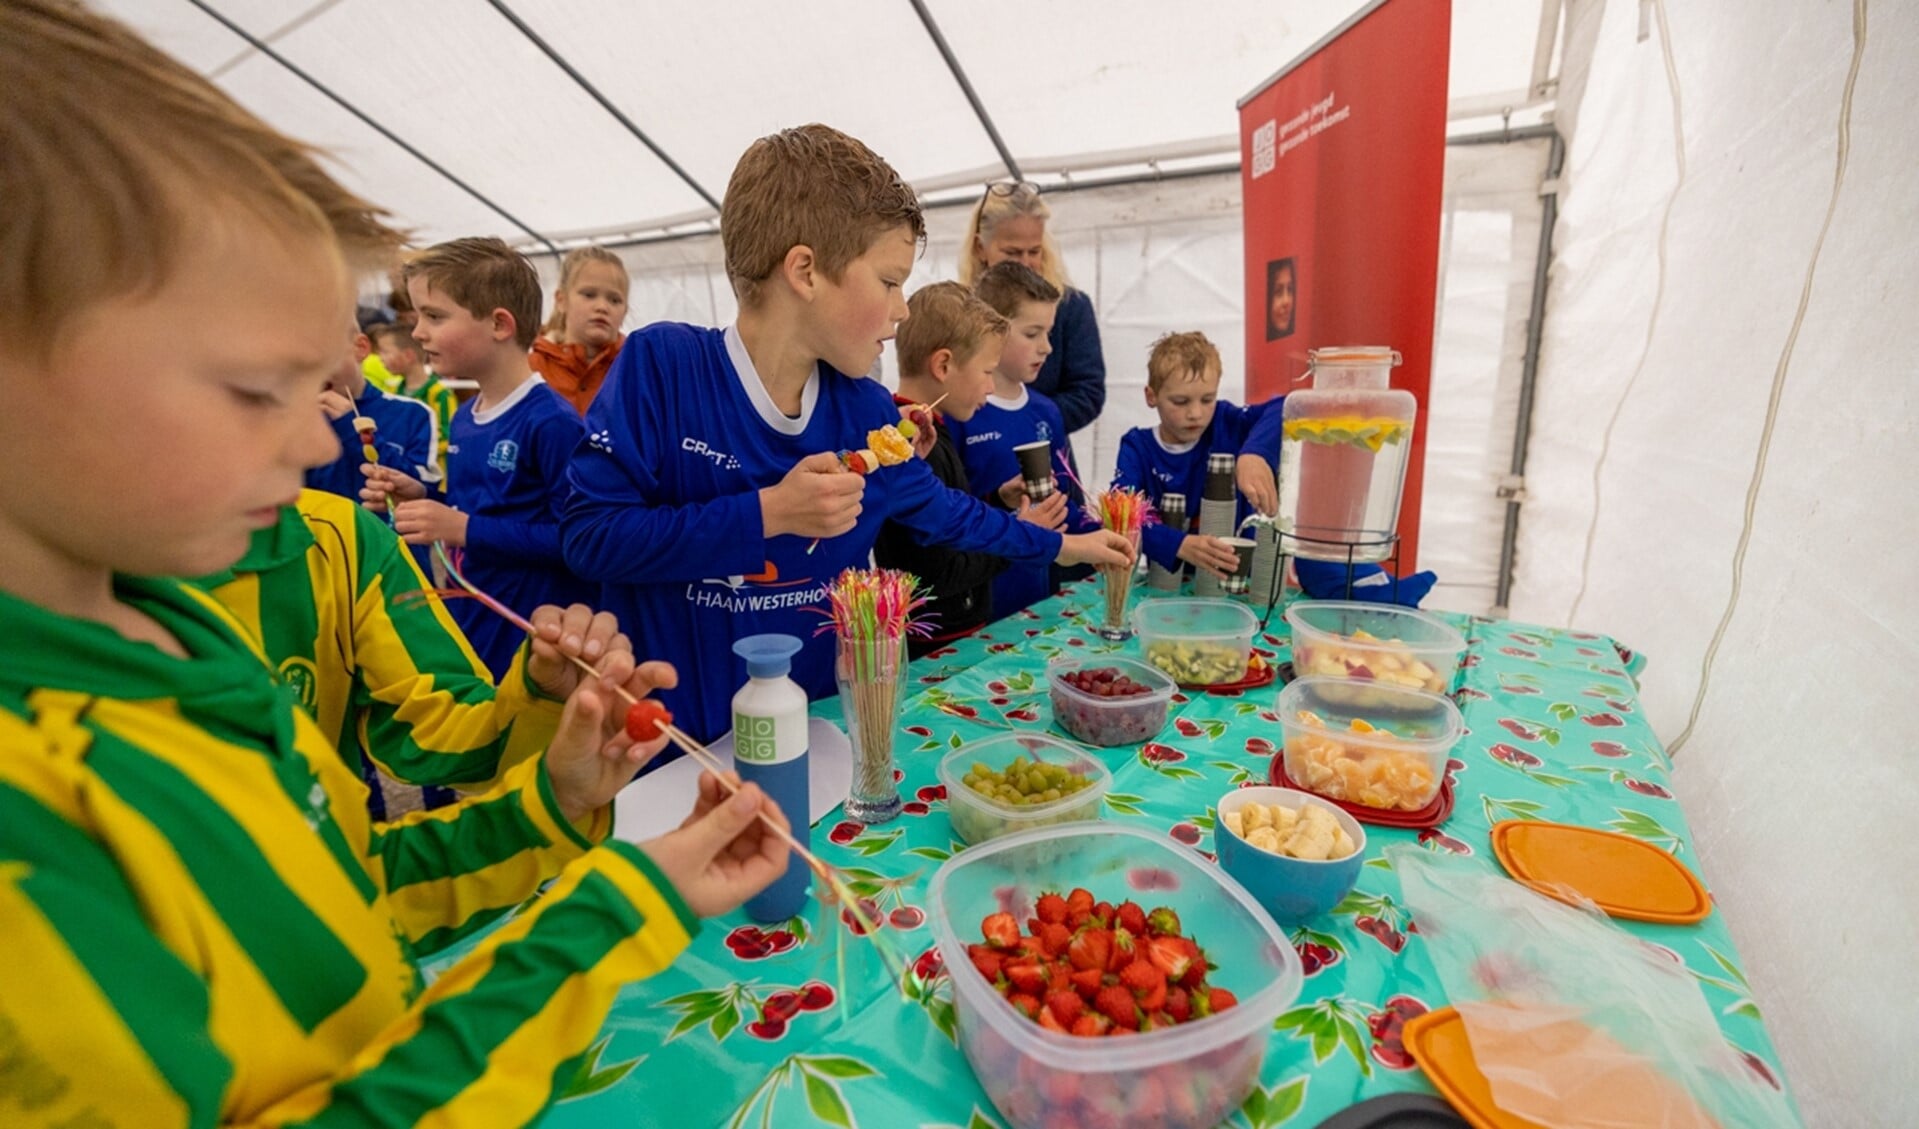 De jeugd mag gratis fruit eten in de kantine van VV Buitenpost.